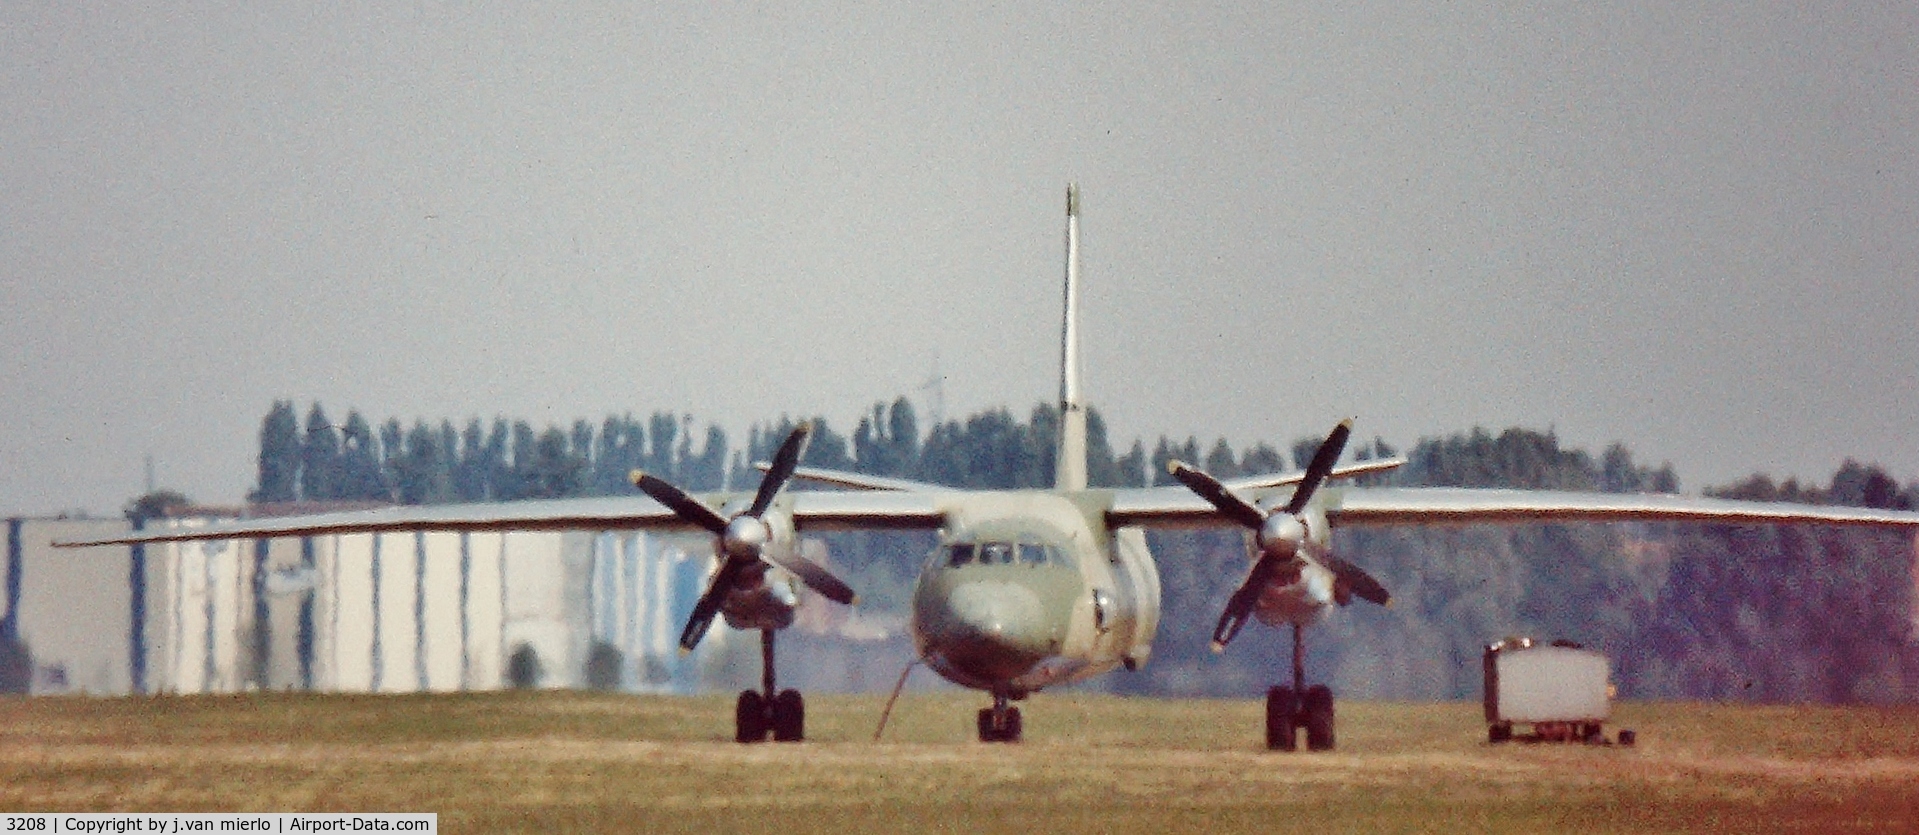 3208, 1983 Antonov An-26 C/N 13208, Moorsele air show